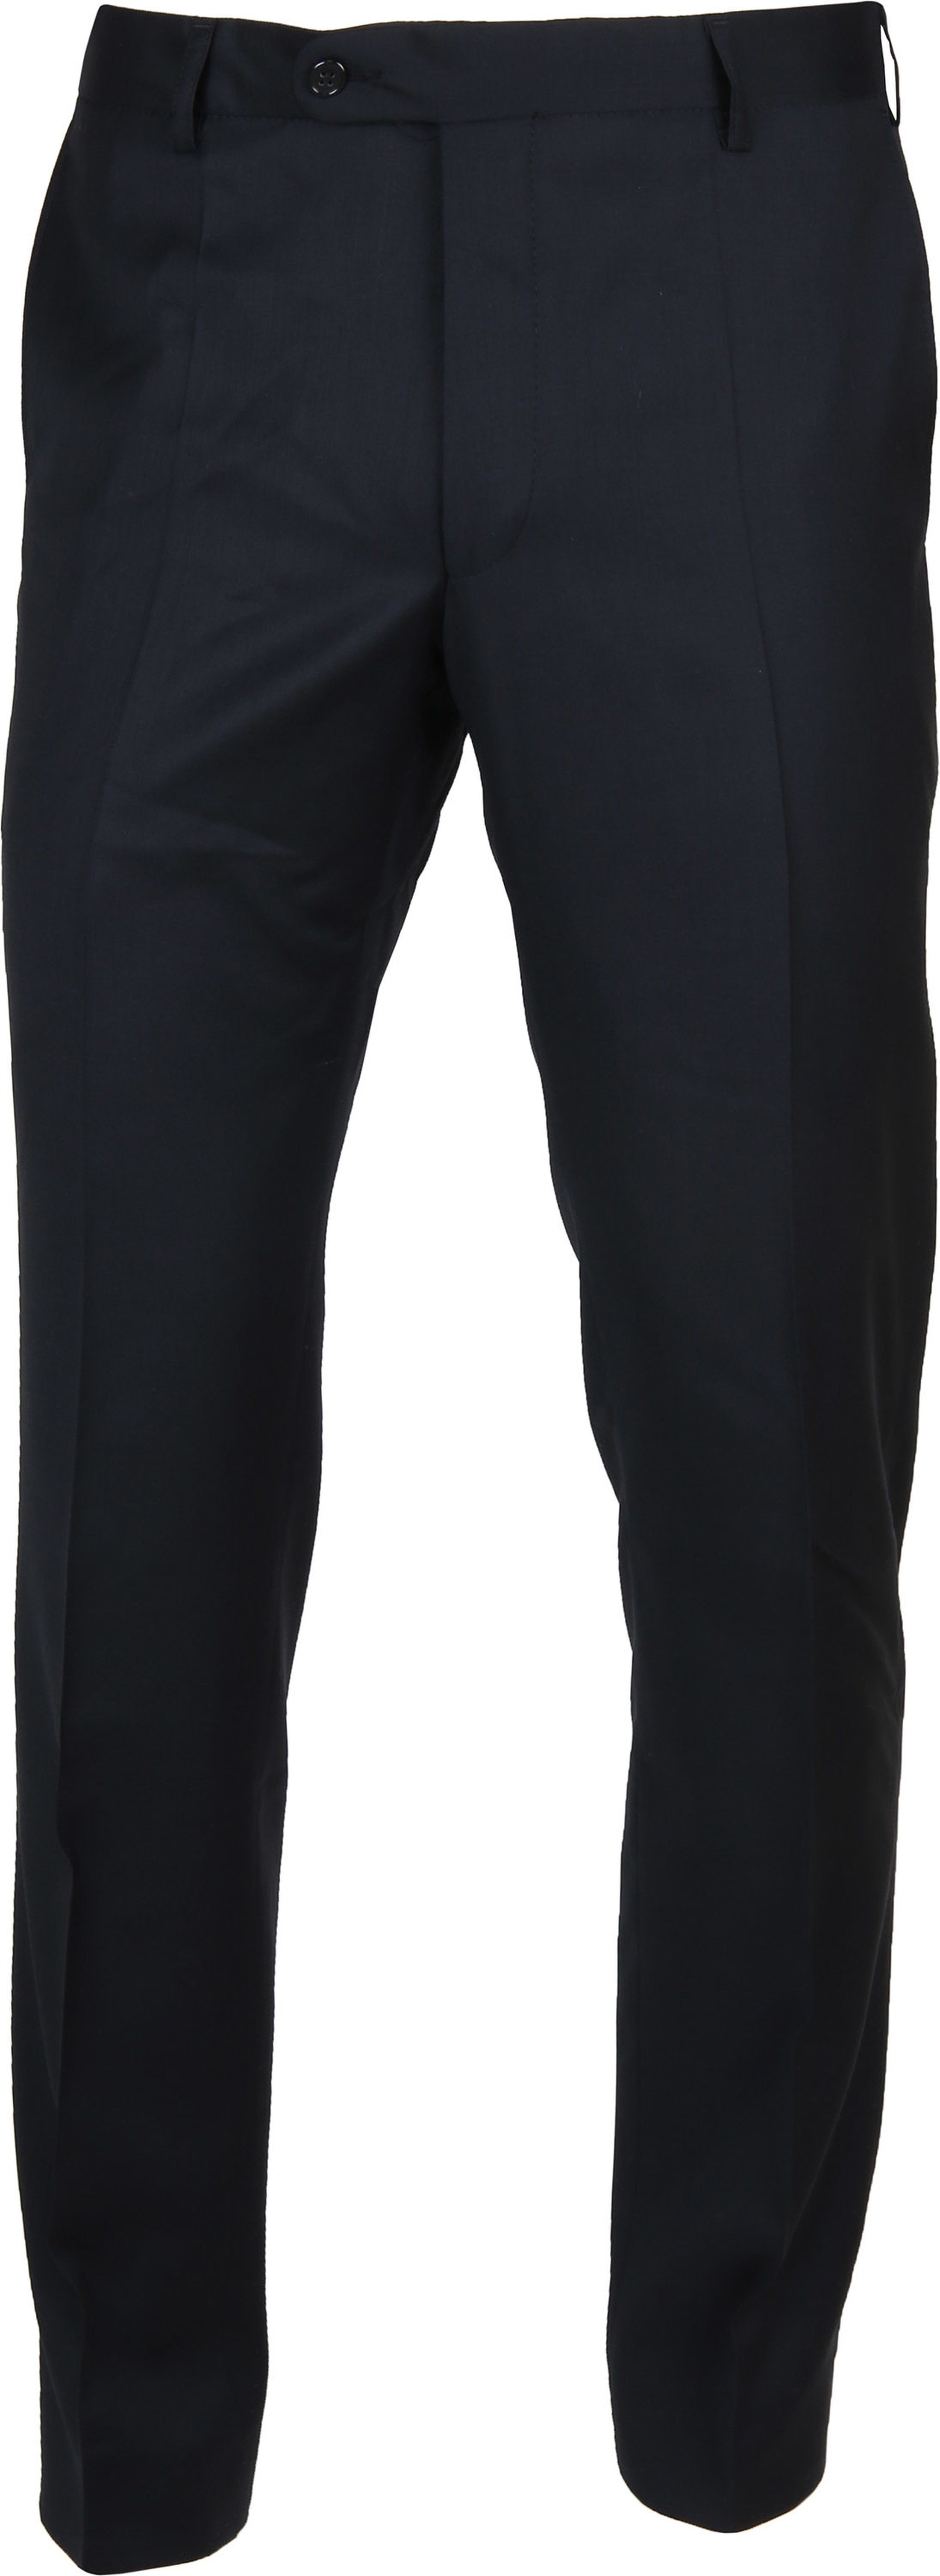 Suitable Pantalon Piga Marine Bleu foncé Bleu taille 102